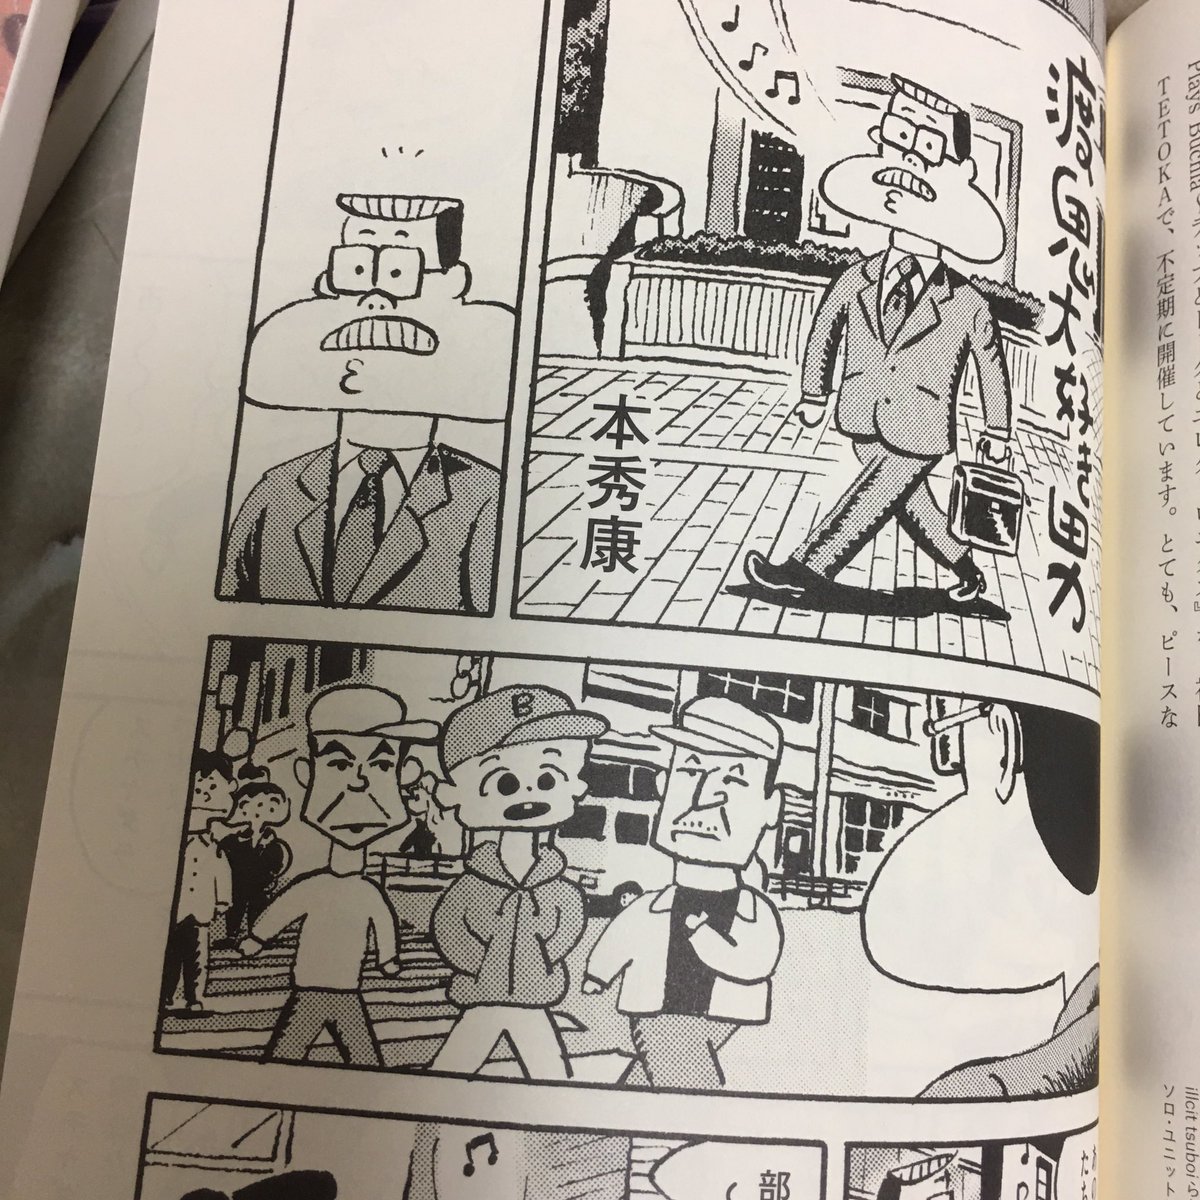 スチャダラパー『余談 シン・ヨダン』に、漫画「渡鬼大好き男」を描いています。まさか『余談』に描けるとは!スチャダラパーも渡鬼も今年で30周年なのです(ついでに僕も)。そういう漫画です! 